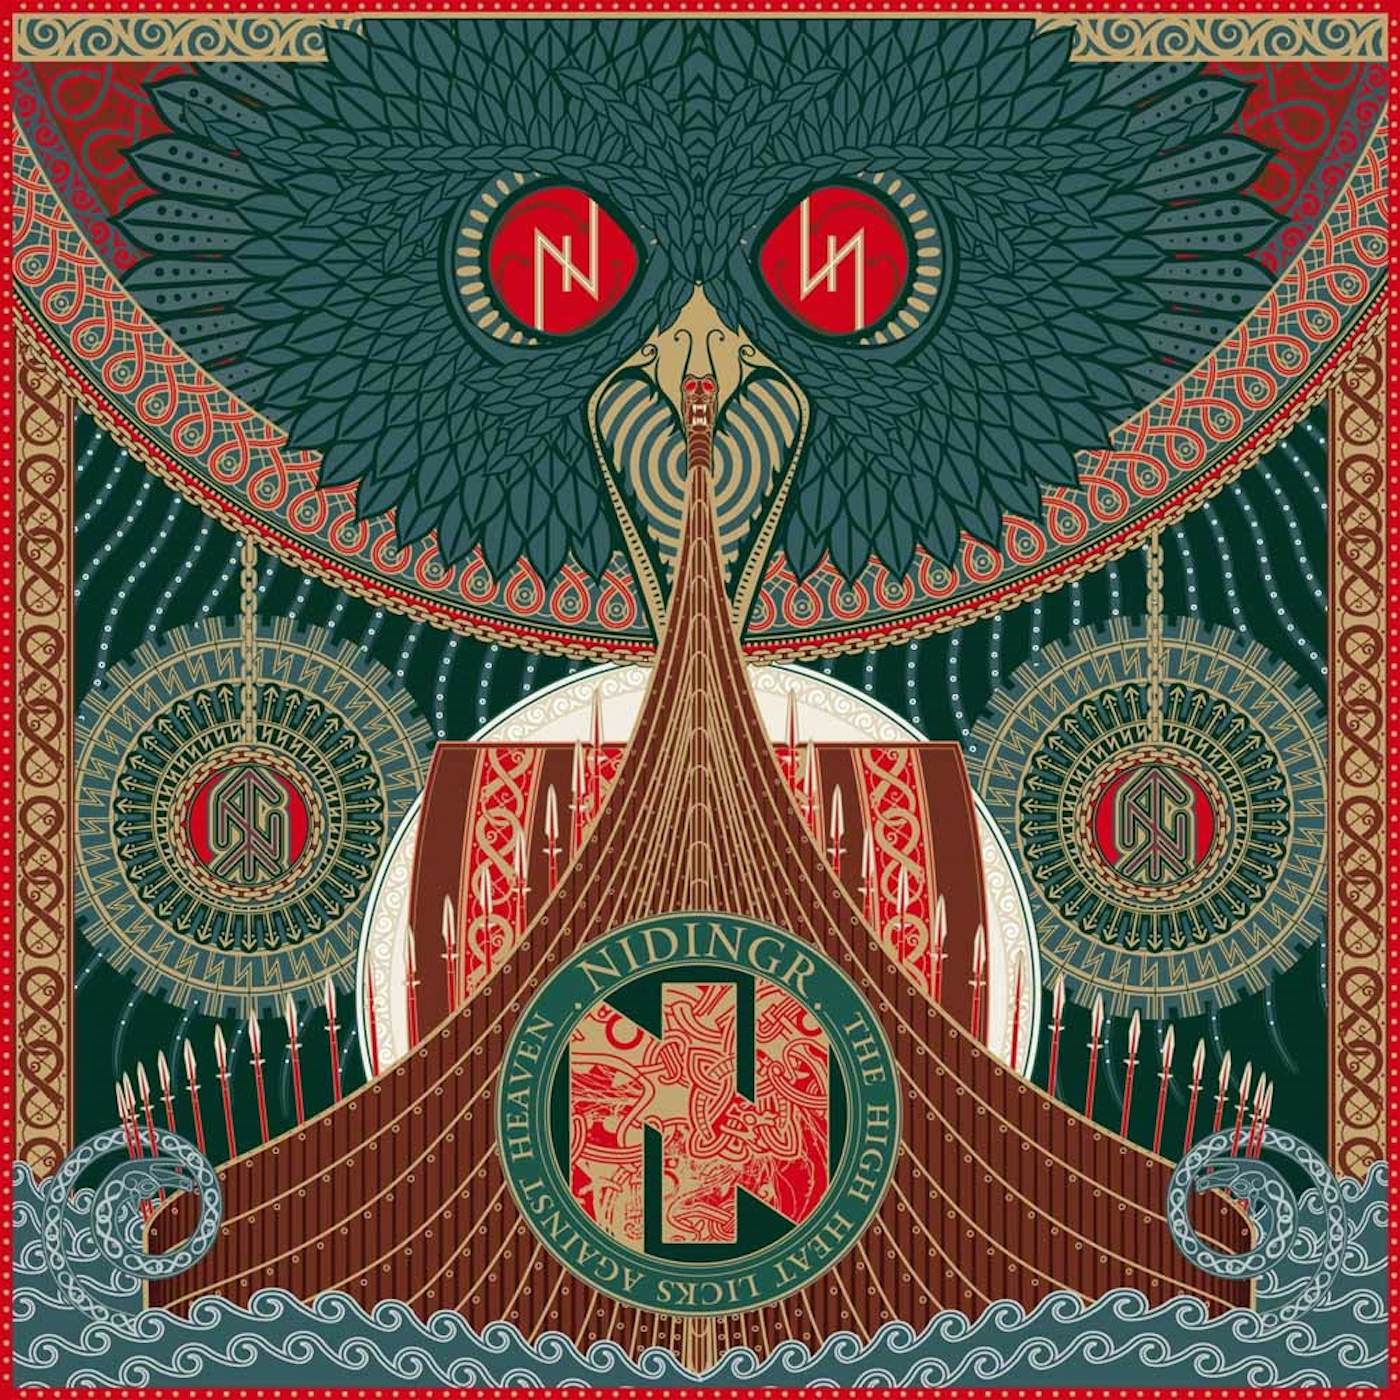 Nidingr LP - The High Heat Licks Against Heaven (Vinyl)